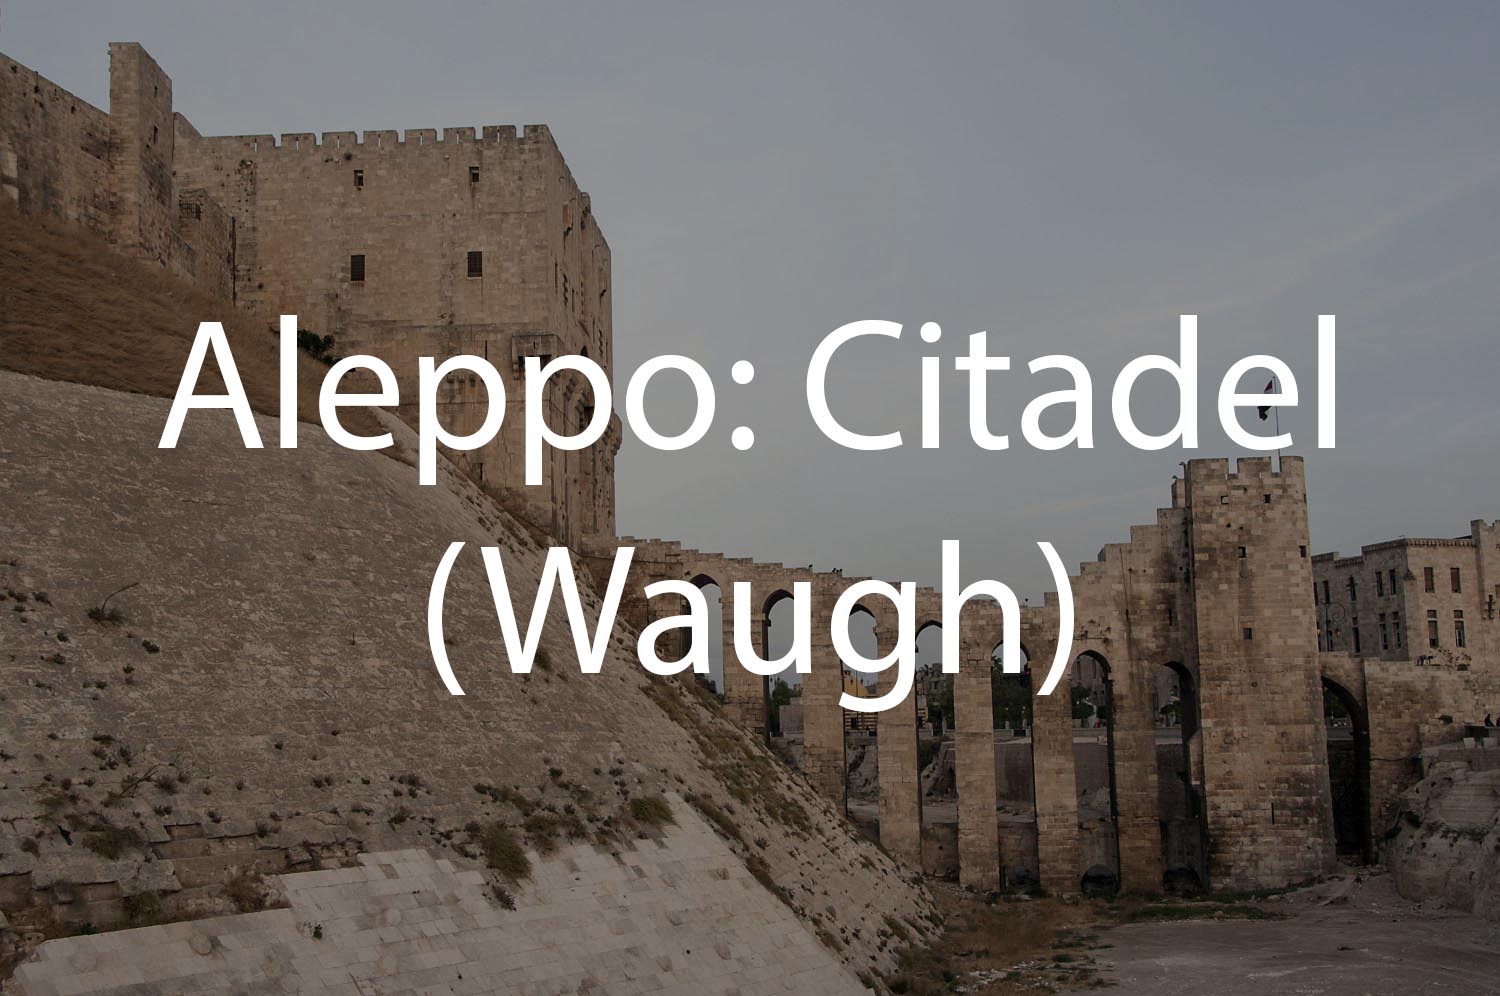 Aleppo: Citadel (Waugh Collection)